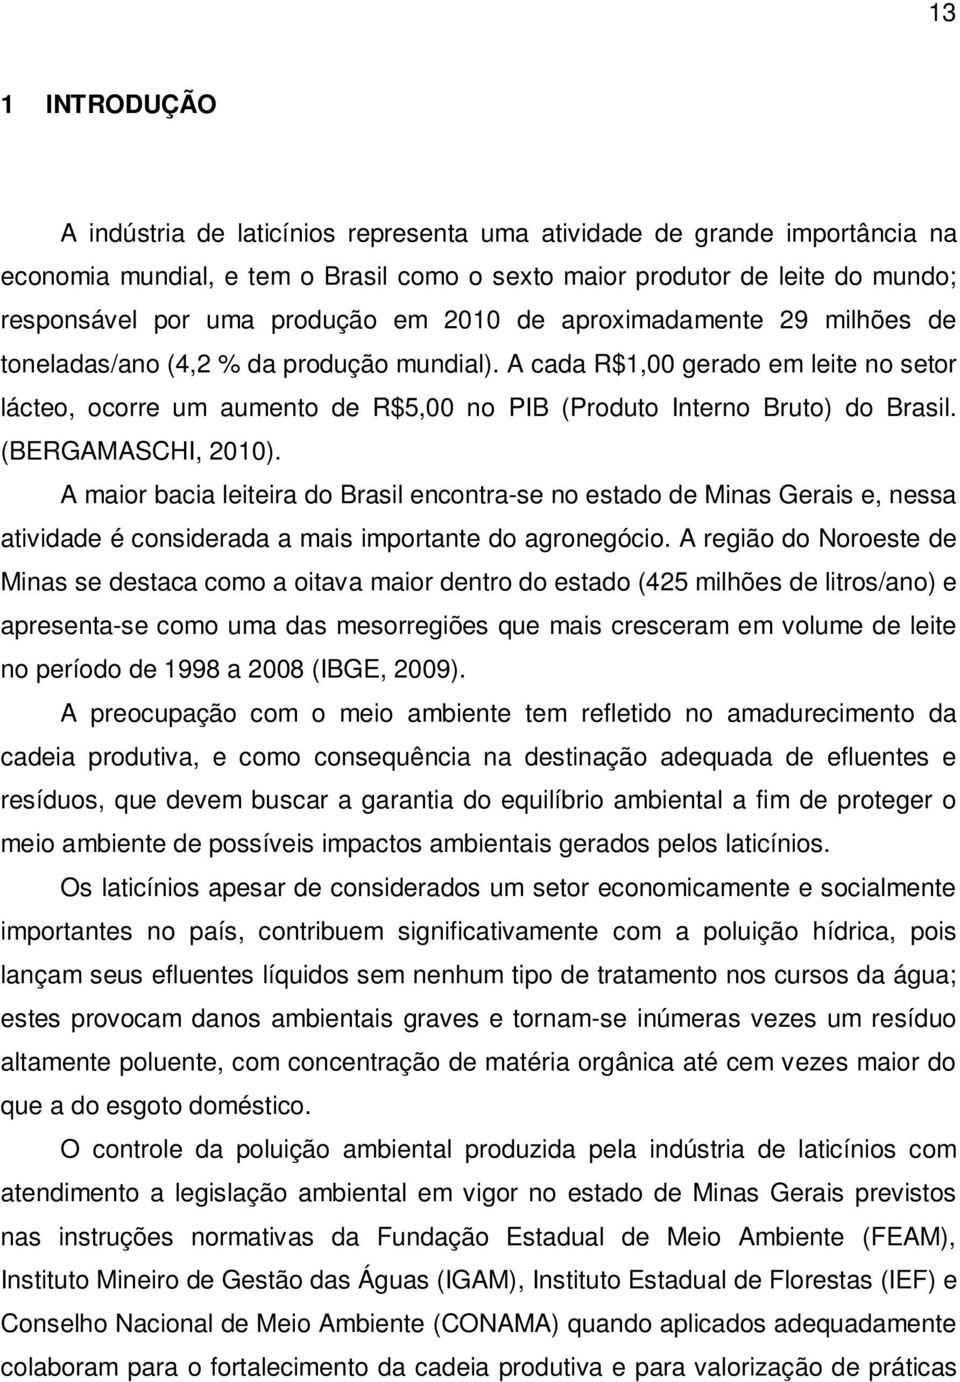 A cada R$1,00 gerado em leite no setor lácteo, ocorre um aumento de R$5,00 no PIB (Produto Interno Bruto) do Brasil. (BERGAMASCHI, 2010).